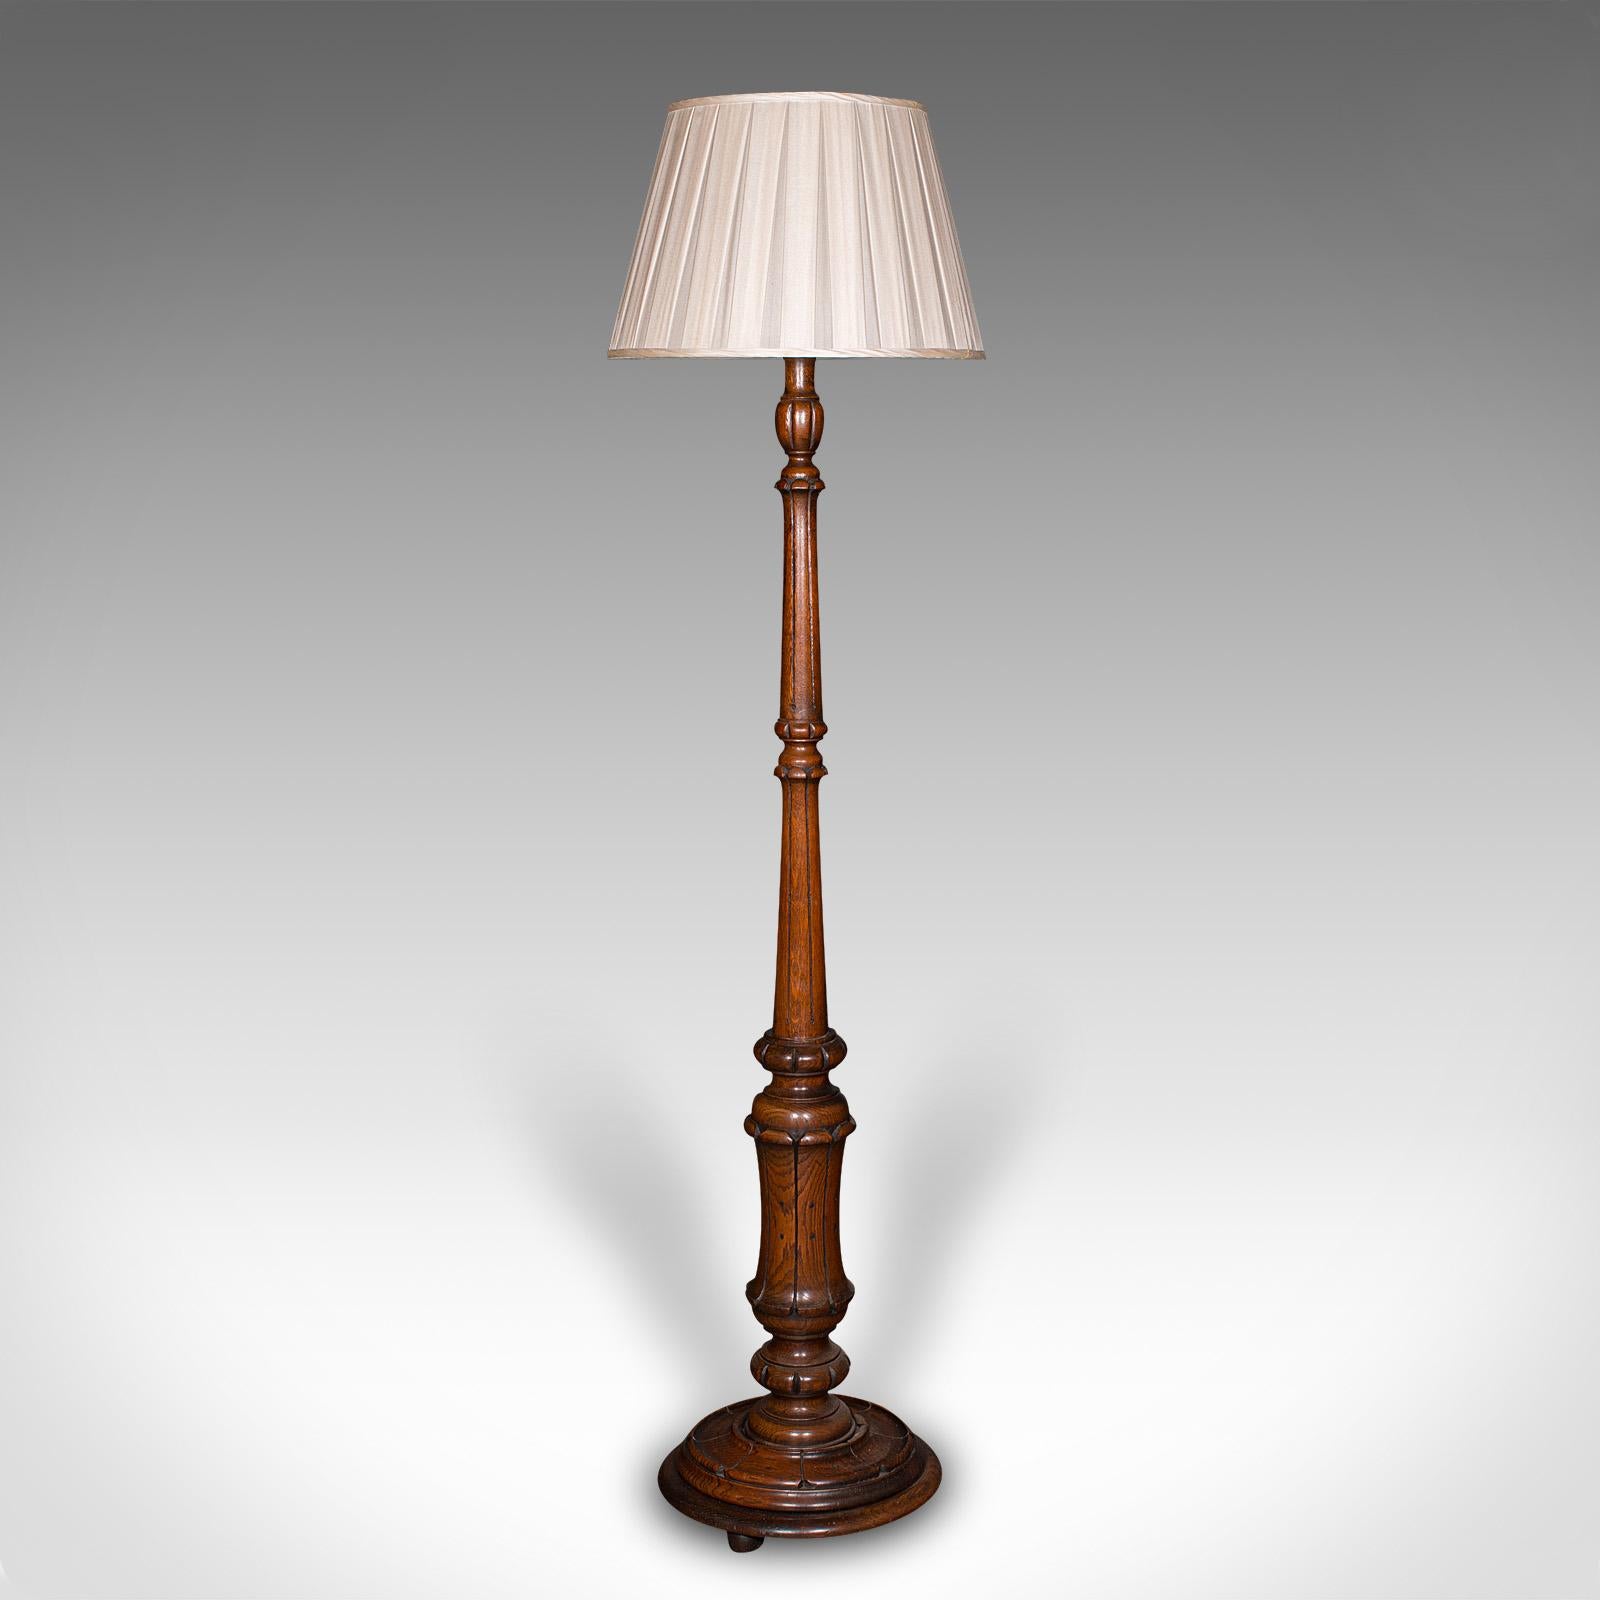 Dies ist eine antike Stehlampe. Eine schottische Leseleuchte aus Eichenholz aus dem späten Viktorianischen Zeitalter, ca. 1890.

Wunderschön geschnitzter Lampenfuß mit zeitlosem Reiz
Zeigt eine wünschenswerte gealterte Patina und in gutem